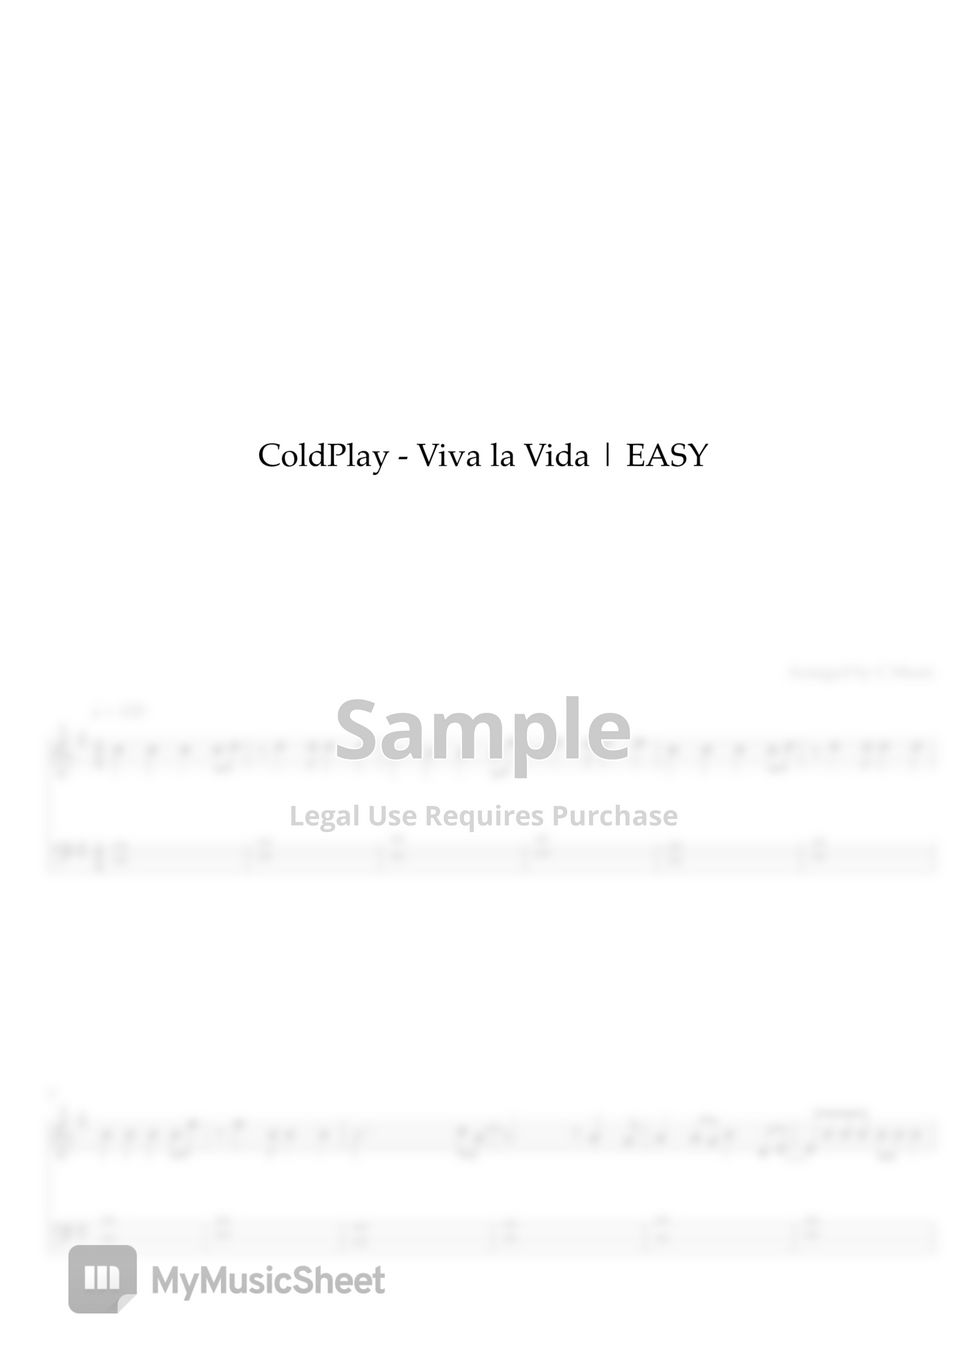 ColdPlay - Viva la Vida (Easy Version) by C Music